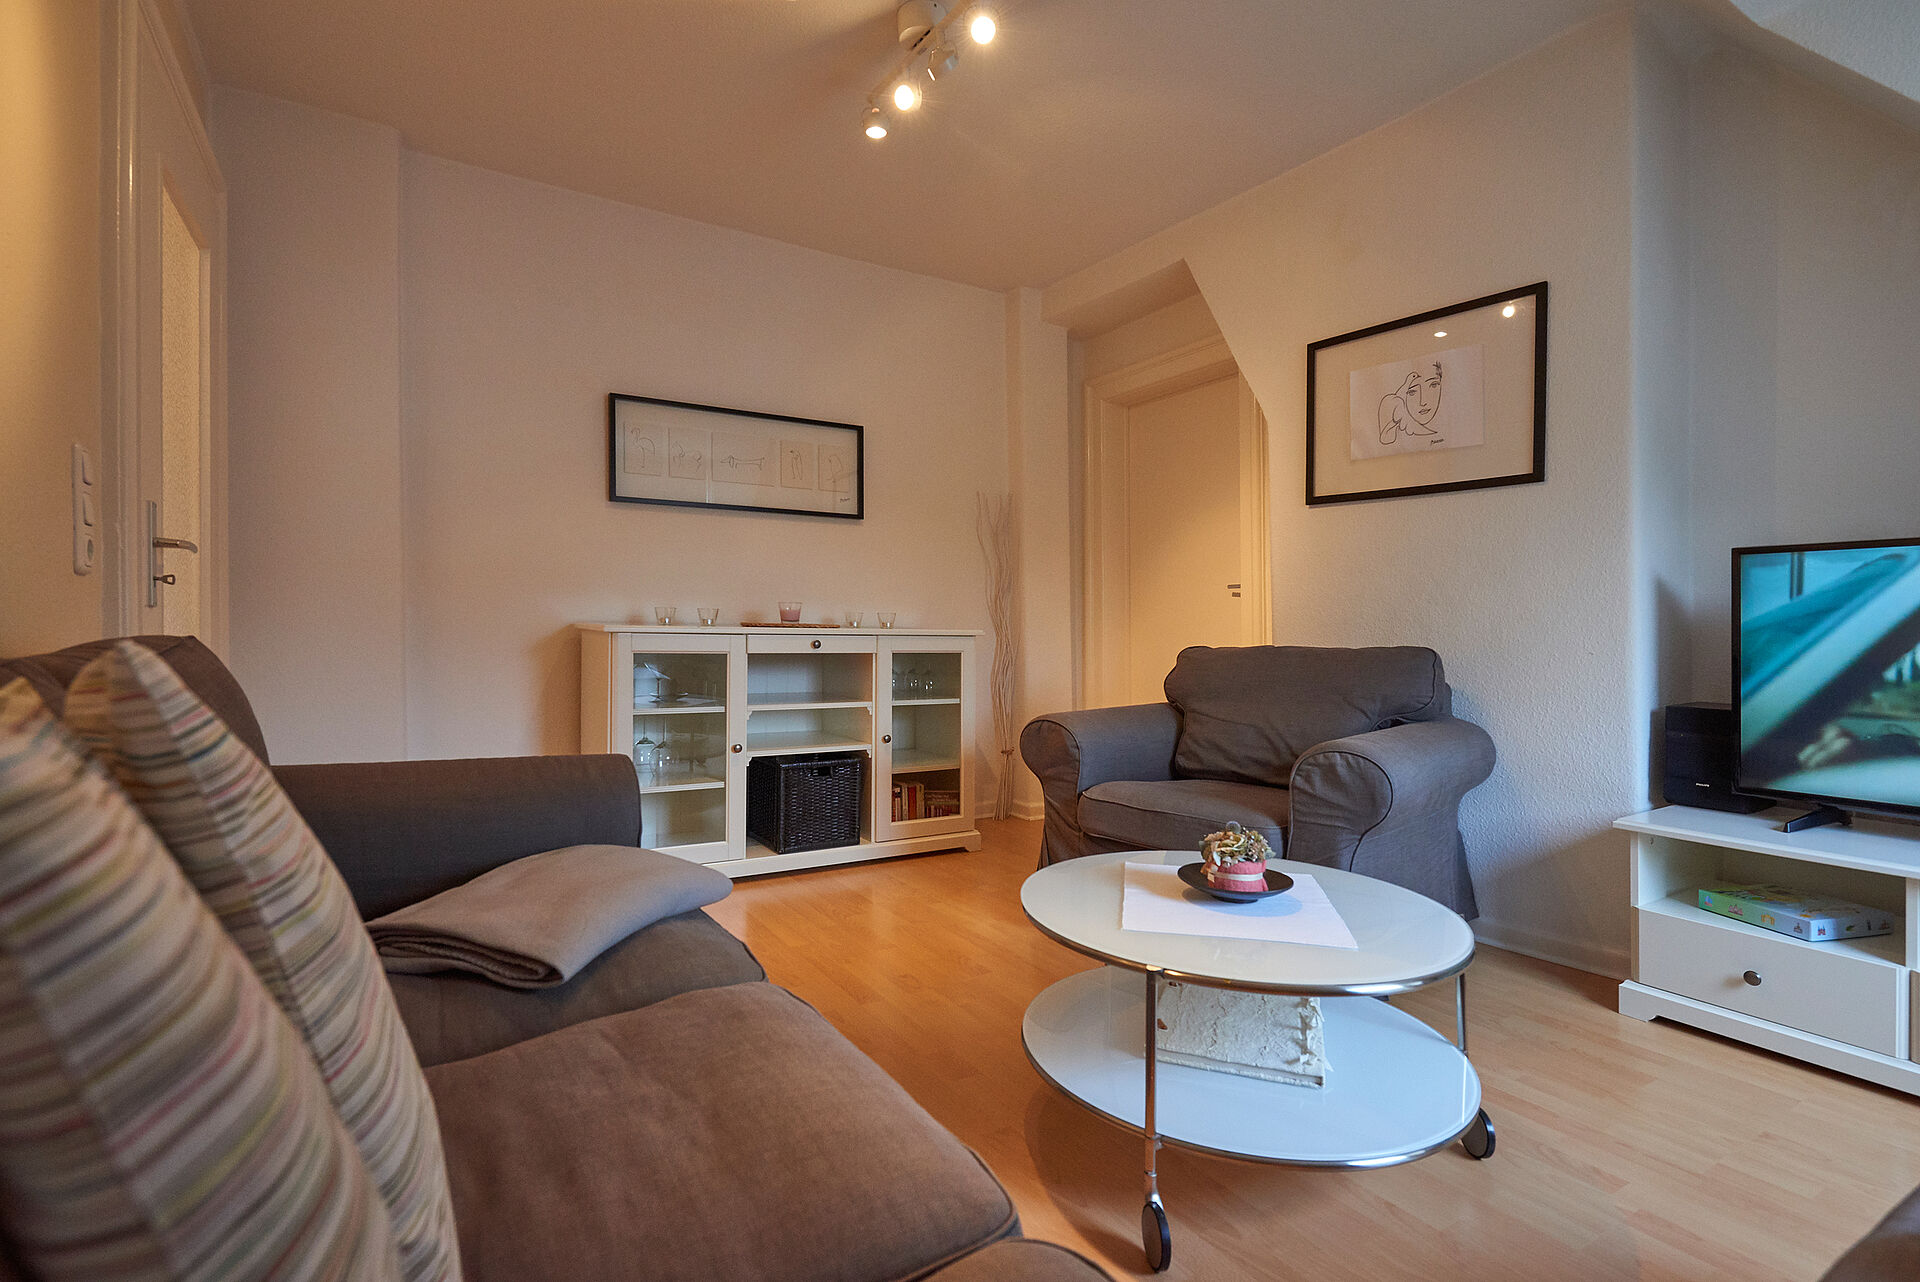 Wohnzimmer mit Couch, Sessel, Sideboard und TV, der weiße Couchtisch steht auf Rollen